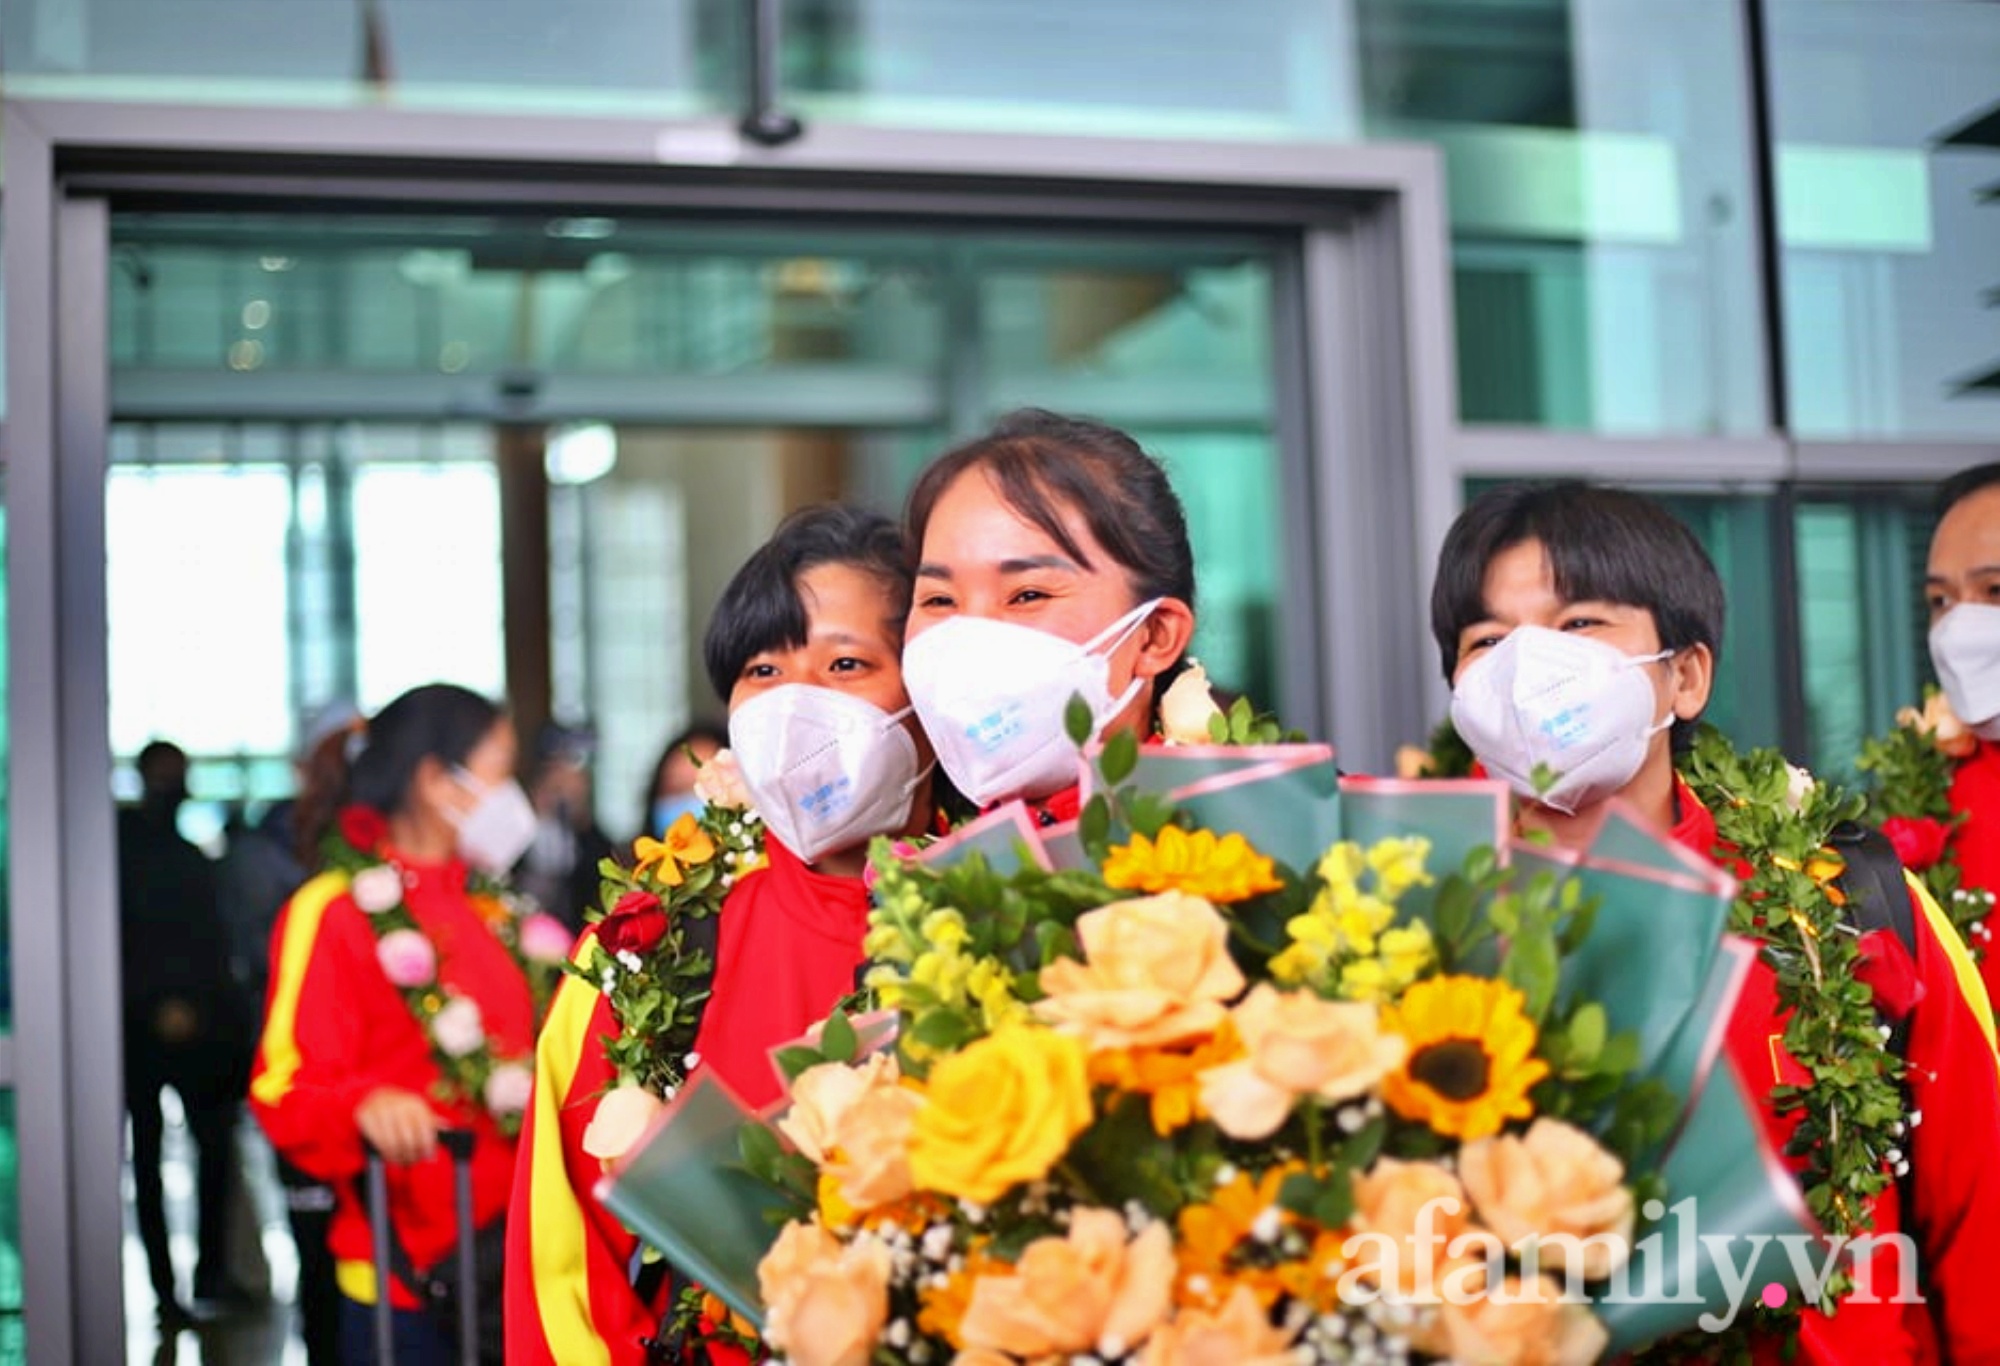 NÓNG: Chuyên cơ chở những cô gái vàng của bóng đá Việt Nam vừa hạ cánh sân bay Nội Bài - Ảnh 9.